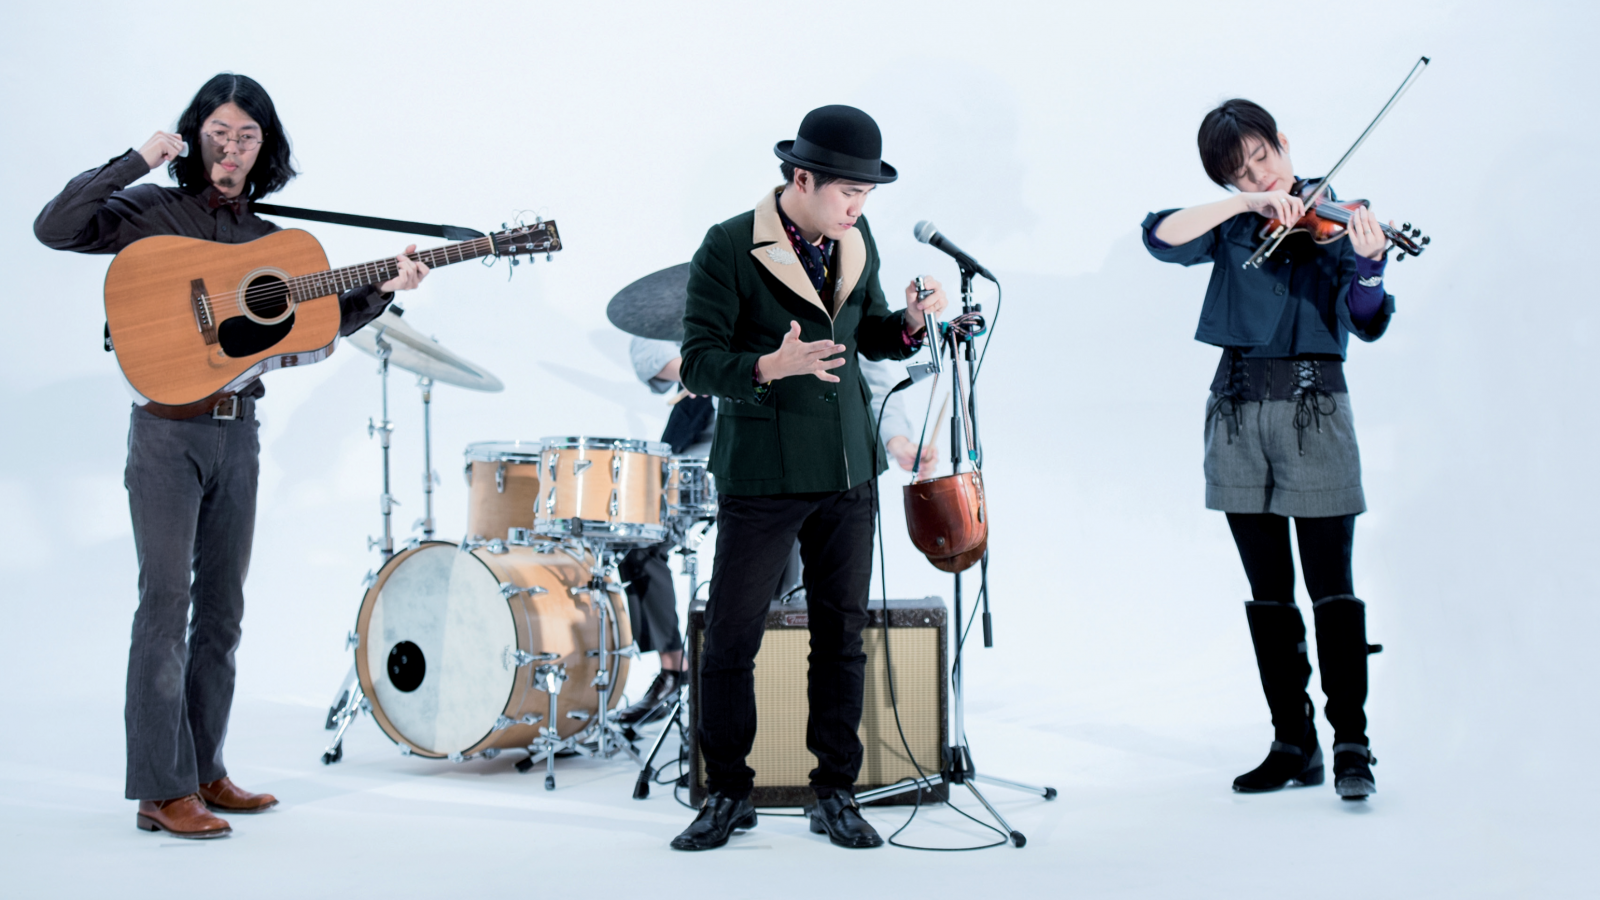 Harmonica Creams presenta 'Futura Ancient Alchemy'. De izquierda a derecha: Koji Nagao (guitarra), Yoshito Kiyono (armónica) y Aiko Obuchi (fiddel o violín irlandés)